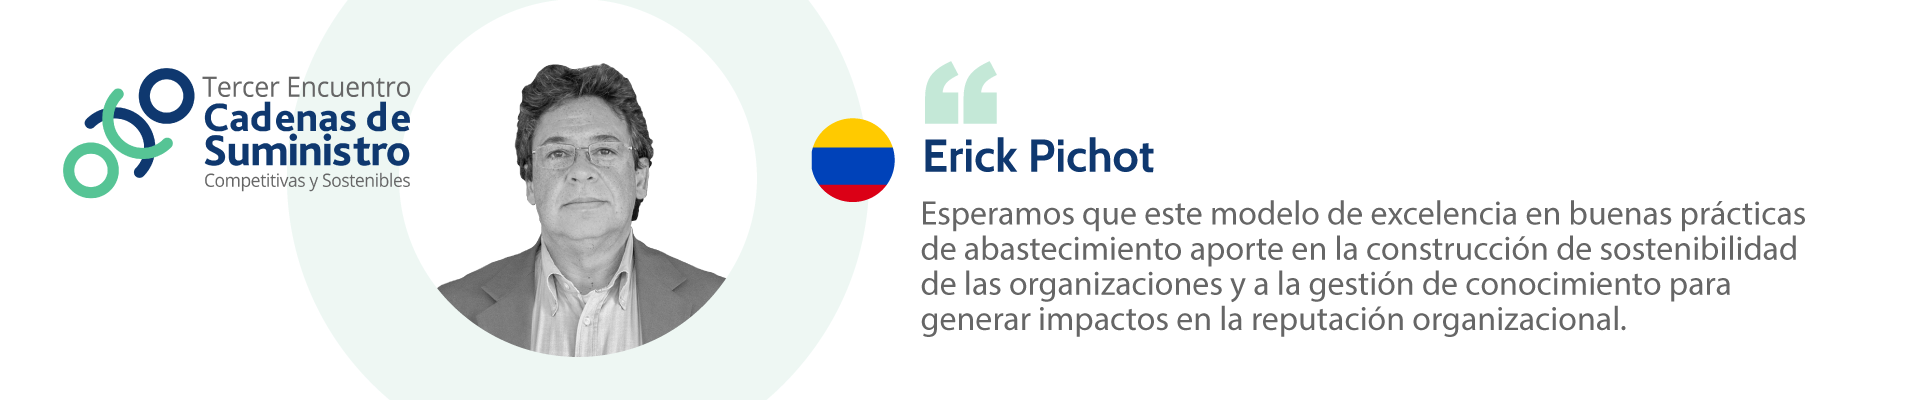 11.-Erick-Pichot